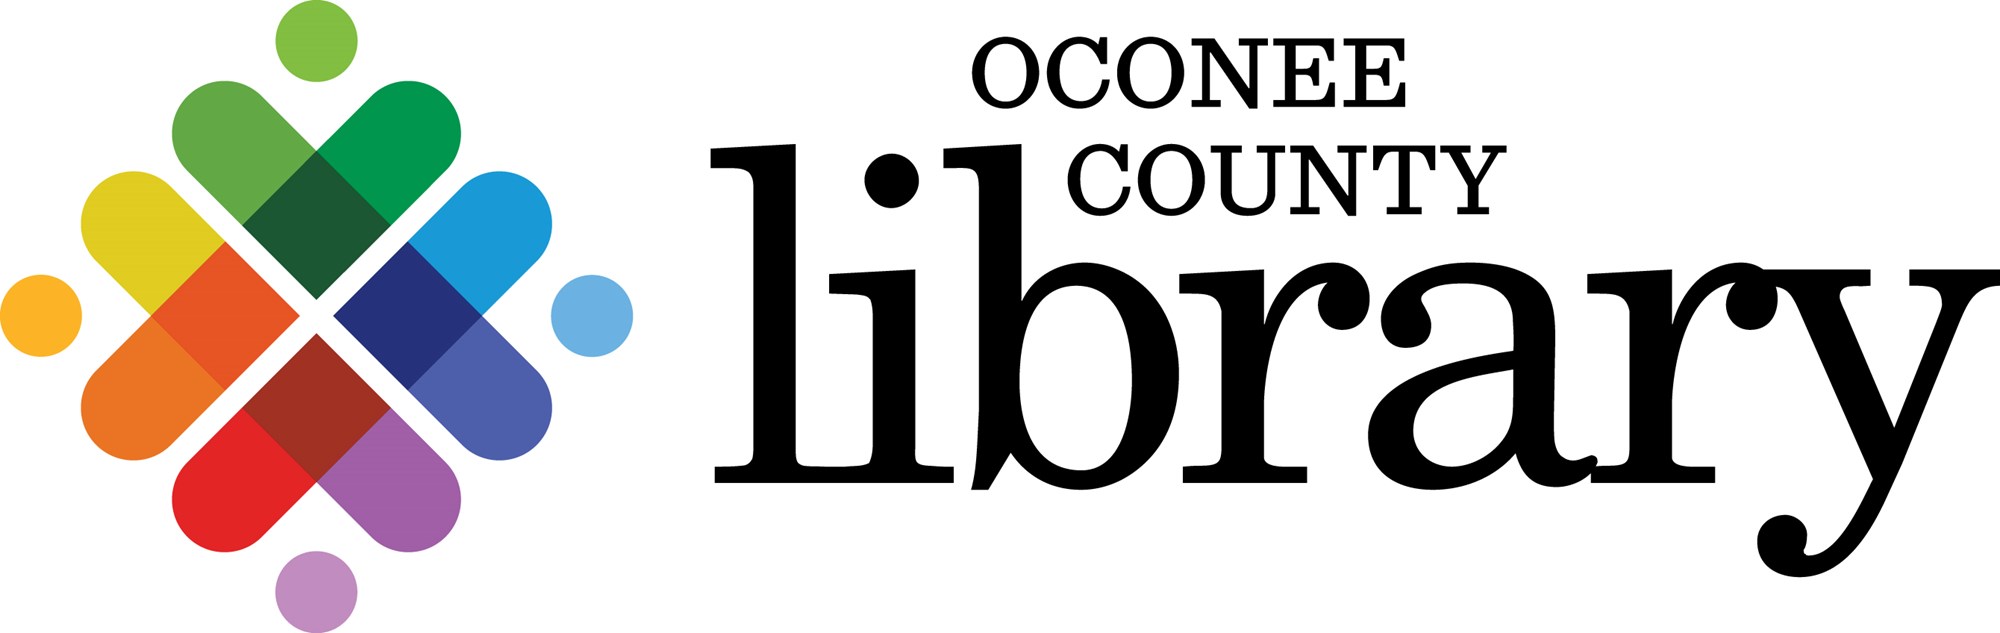 Oconee County Library